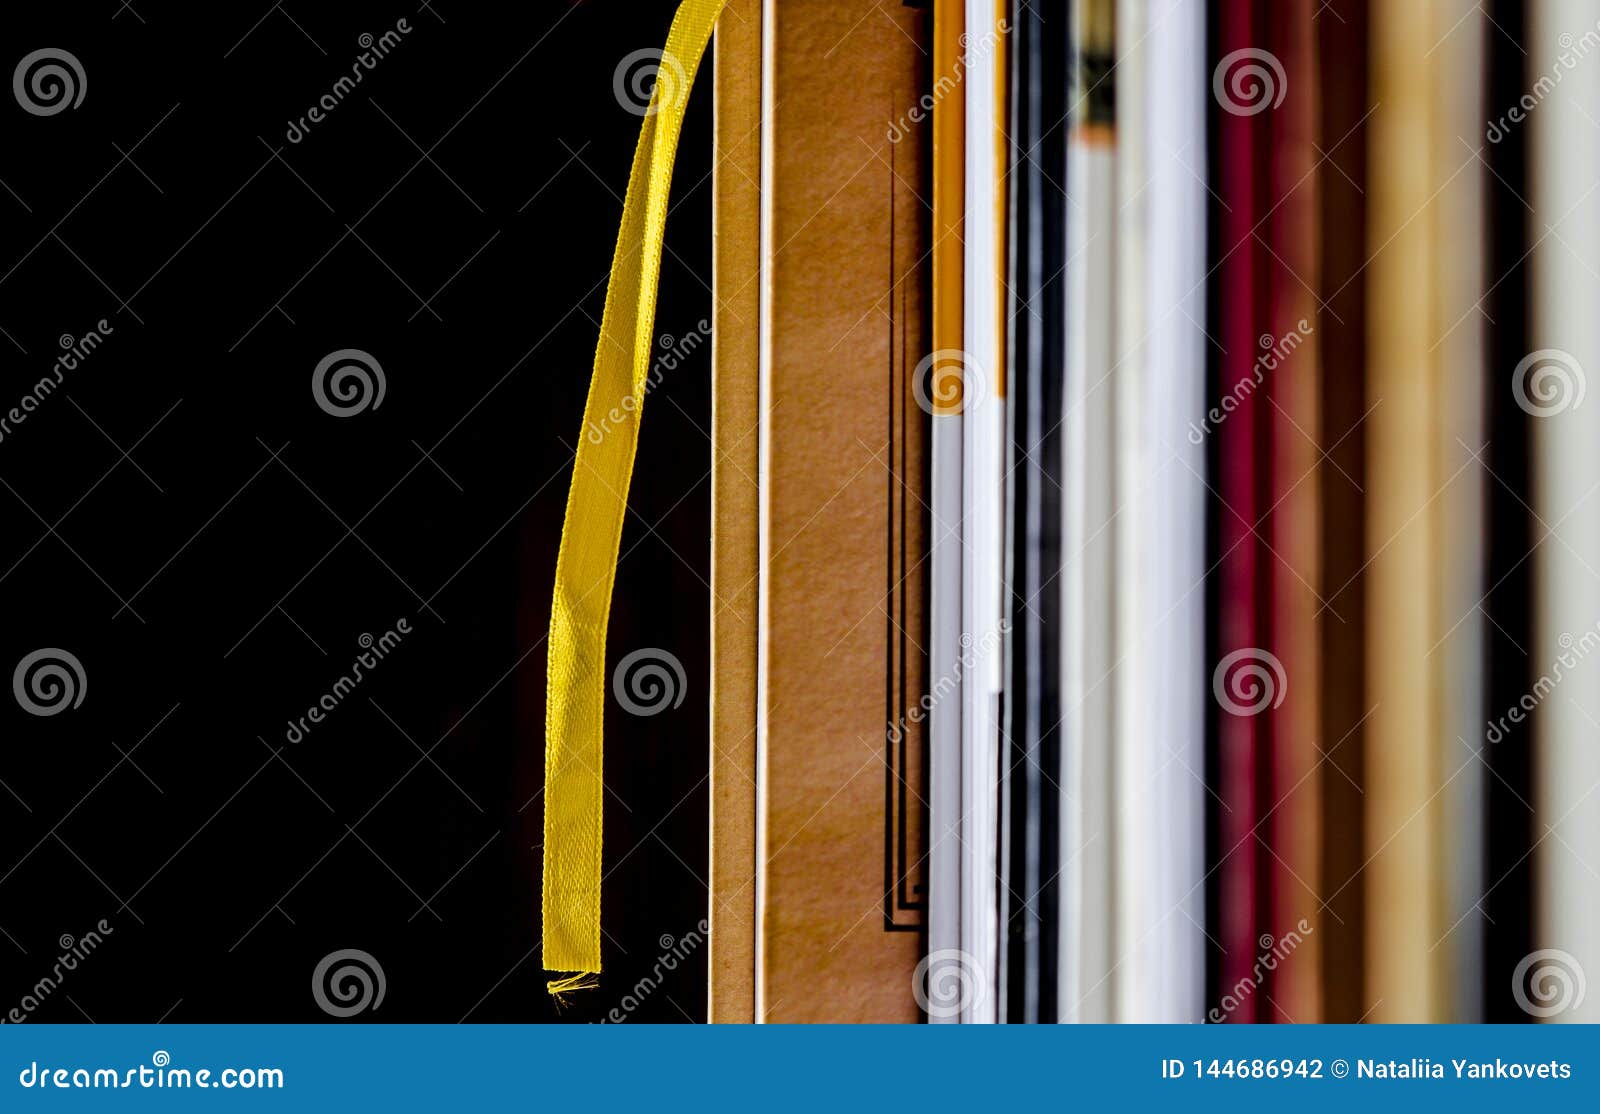 Veel kleurrijke dikke open boekentribune op een donkere achtergrond Klaar te lezen